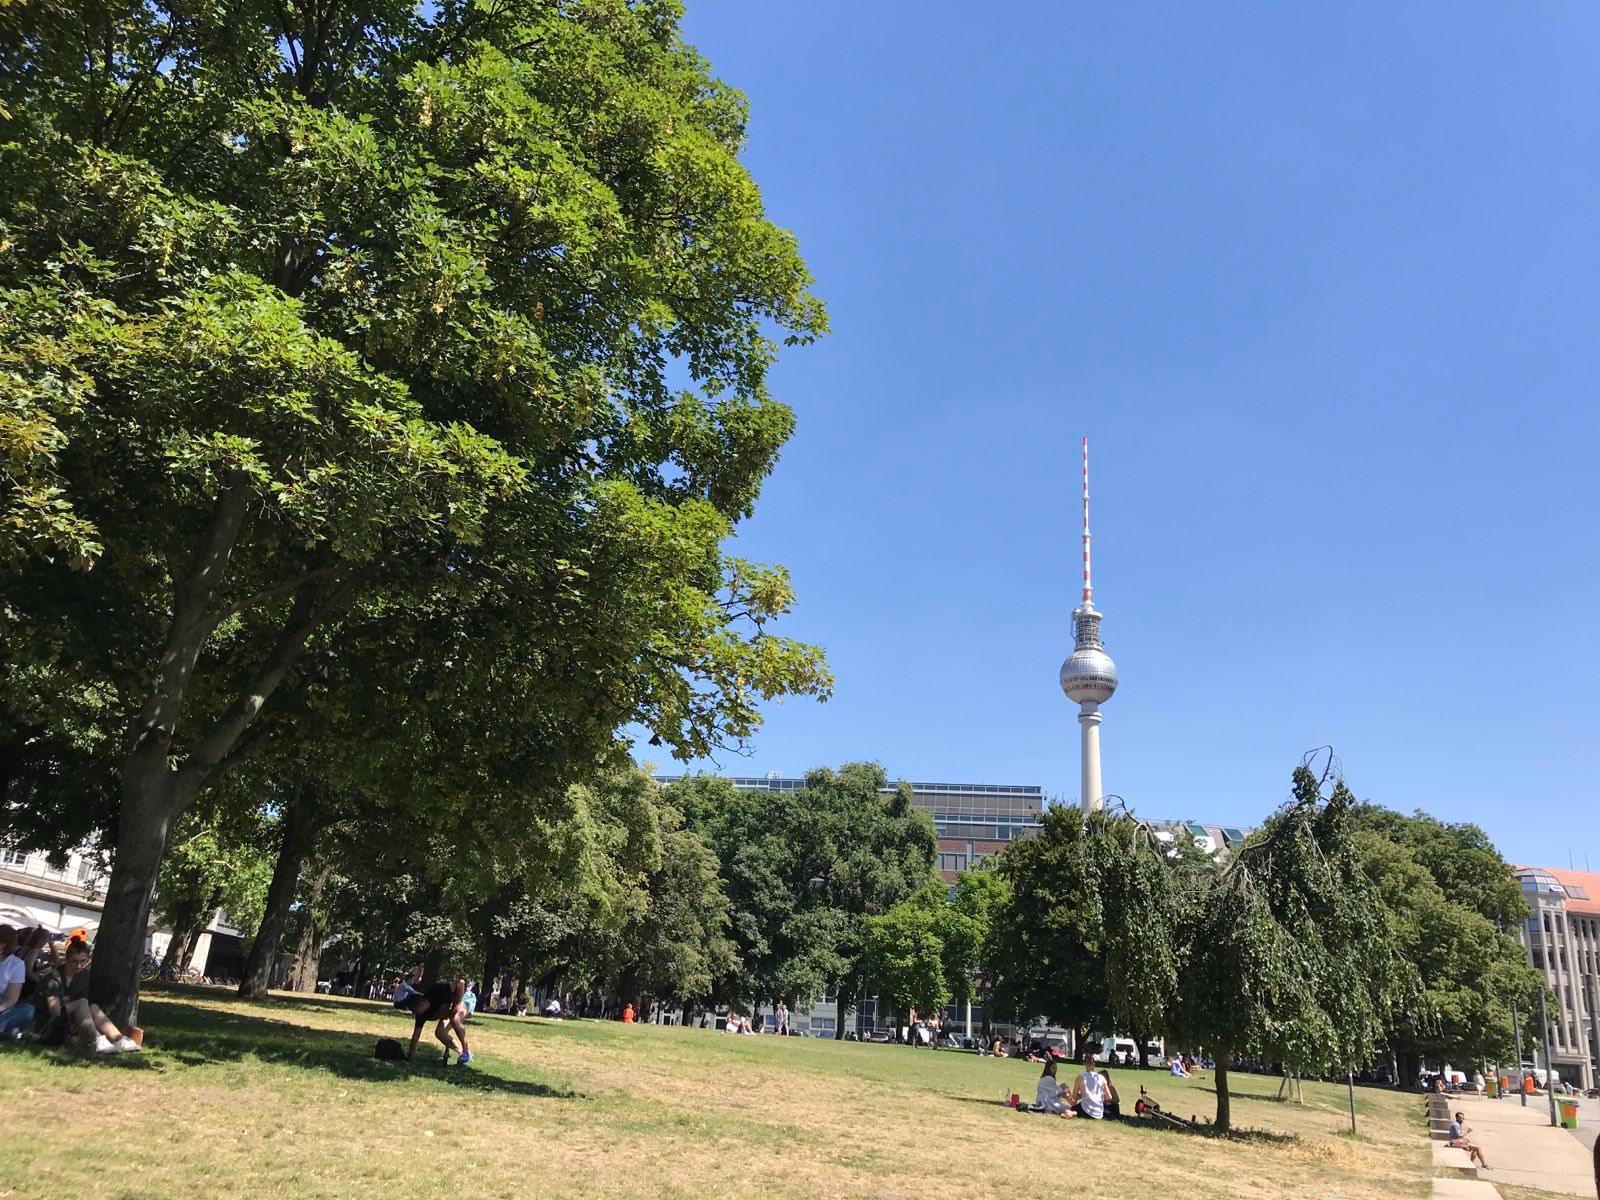 Menschen im Park auf braun-vertrocknetem Gras. Im Hintergrund der Berliner Fernsehurm und strahlend-blauer Himmel.